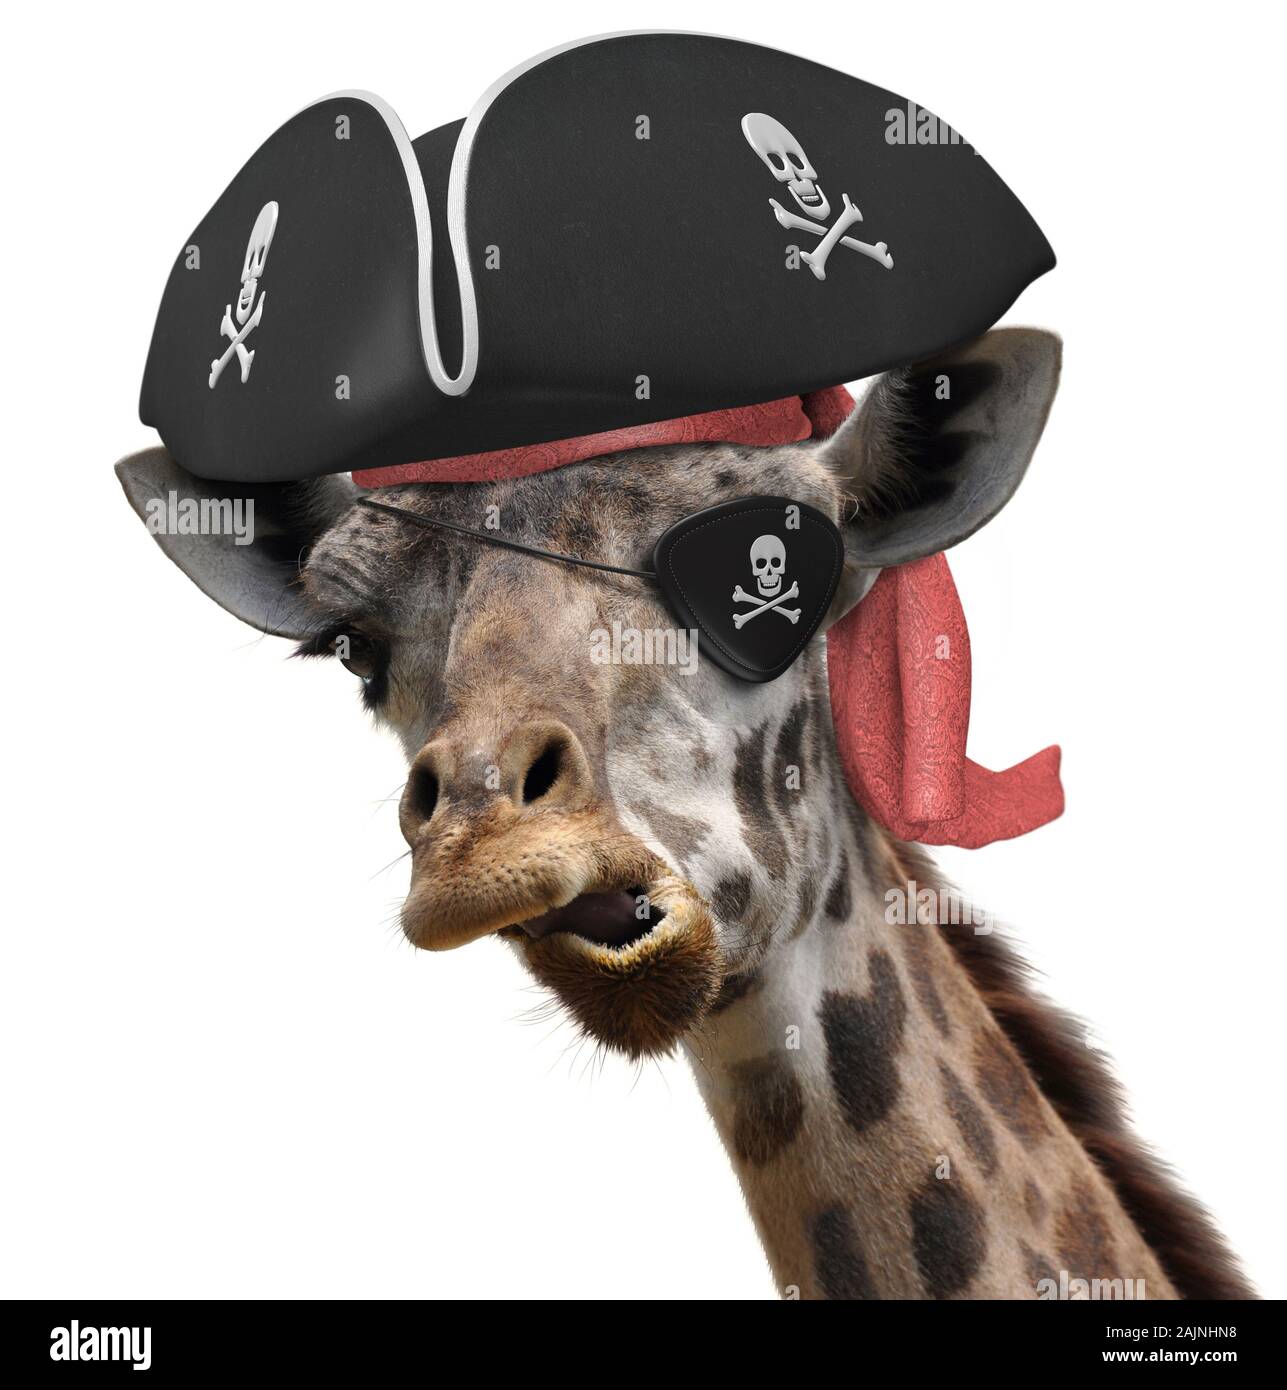 Lustige Tier Bild von einem kühlen giraffe Tragen eines Piraten Hut und Augenklappe mit Totenkopf Stockfoto